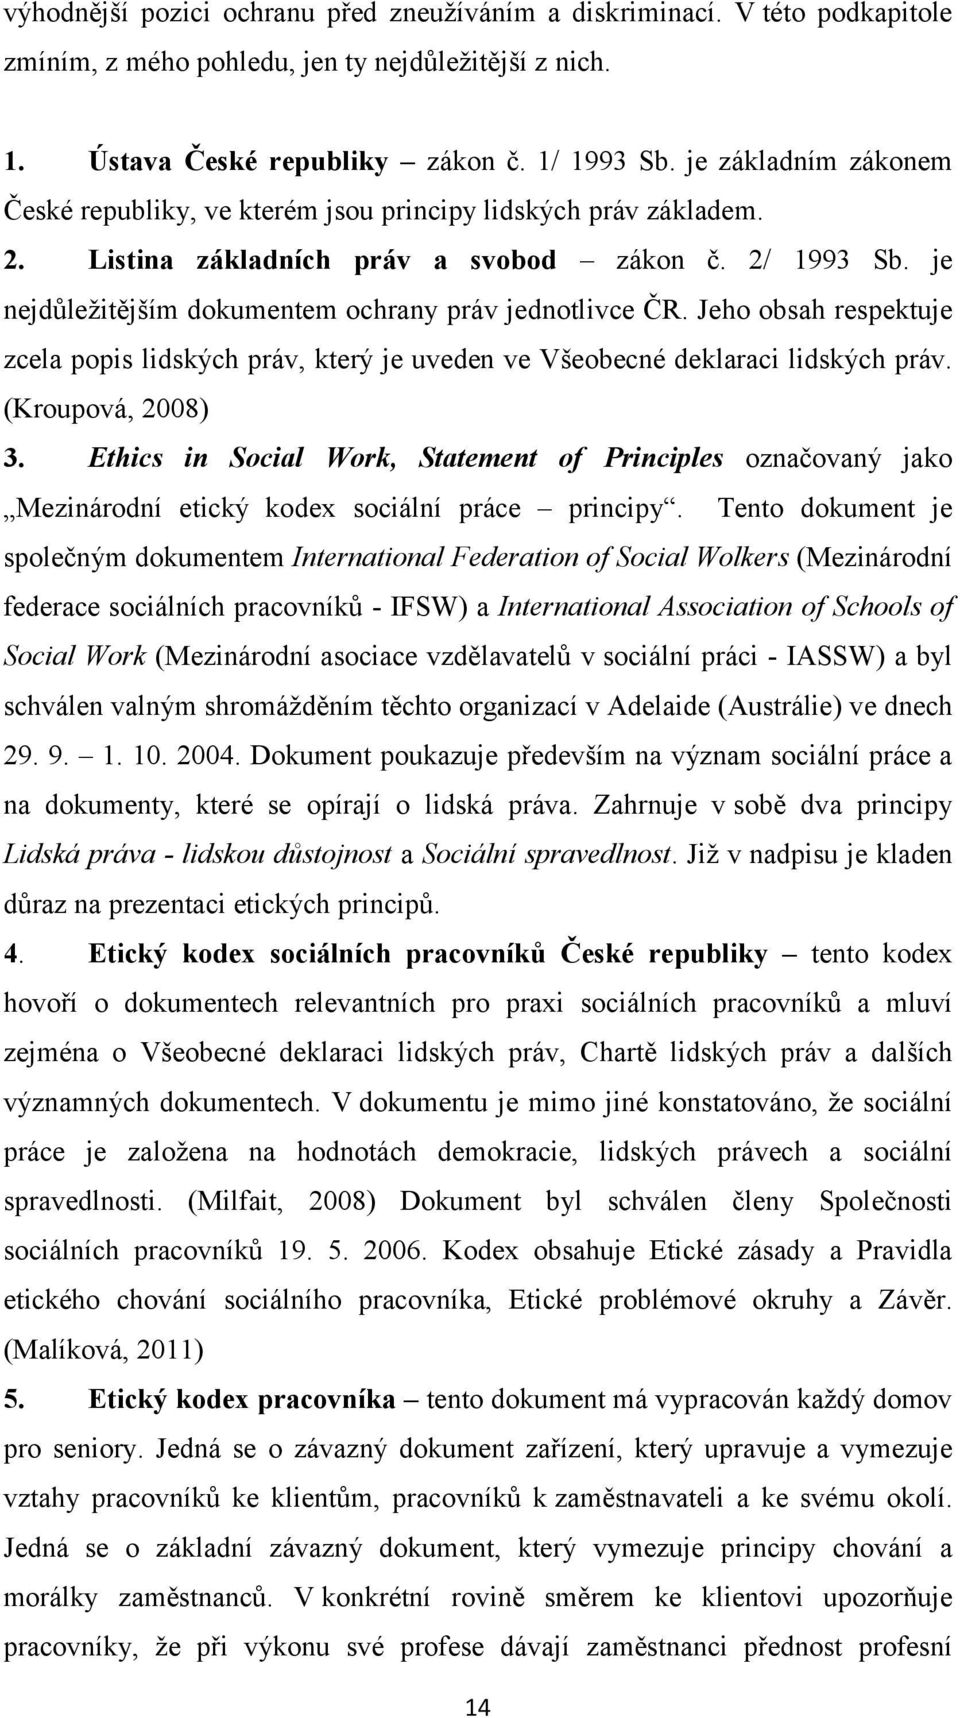 je nejdůležitějším dokumentem ochrany práv jednotlivce ČR. Jeho obsah respektuje zcela popis lidských práv, který je uveden ve Všeobecné deklaraci lidských práv. (Kroupová, 2008) 3.